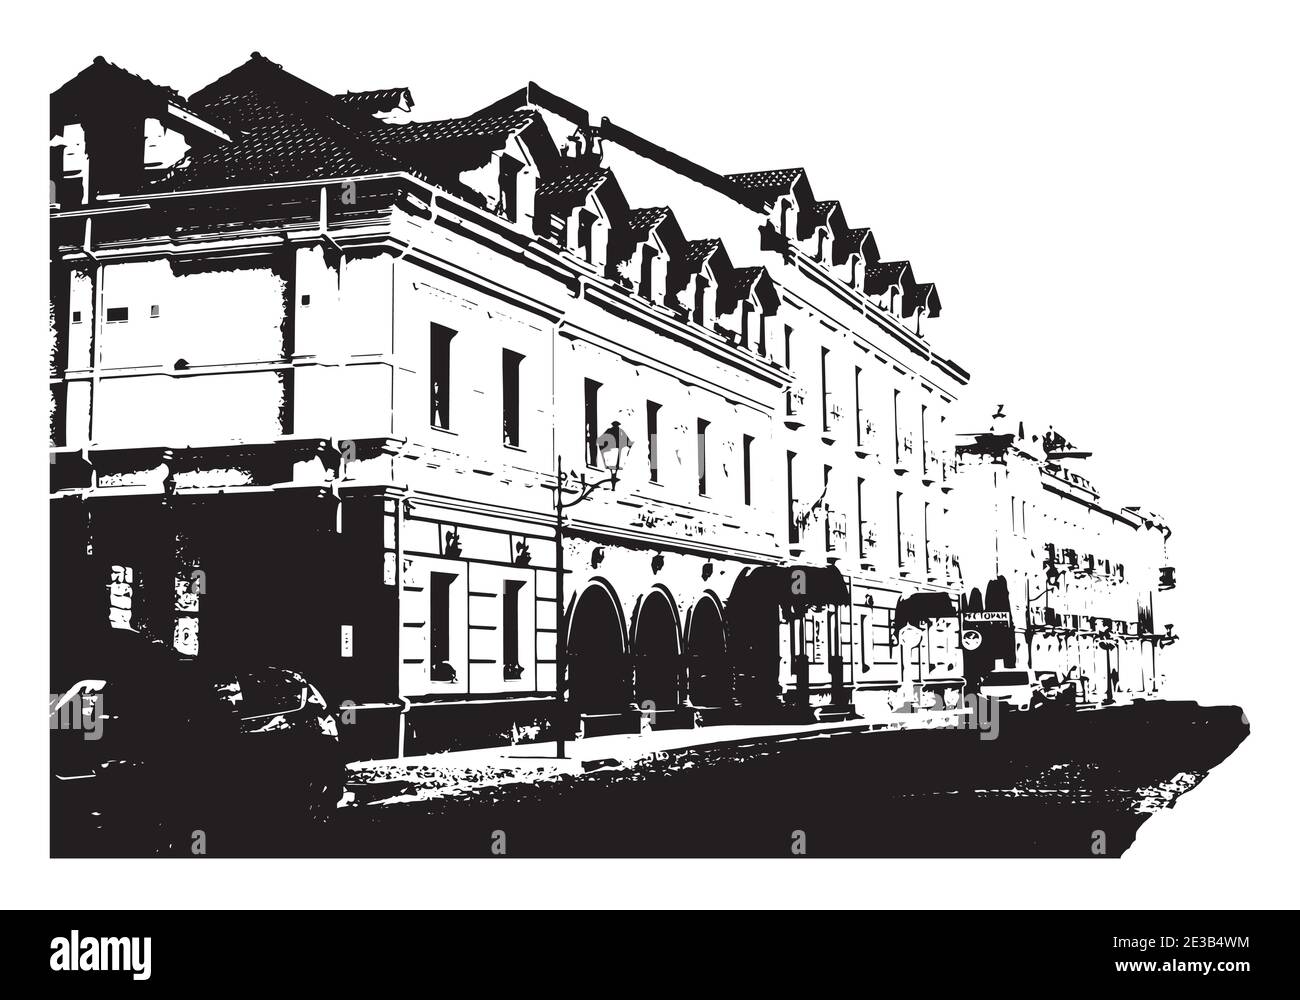 Silhouette eines alten Gebäudes Vektor-Illustration für Design Stock Vektor